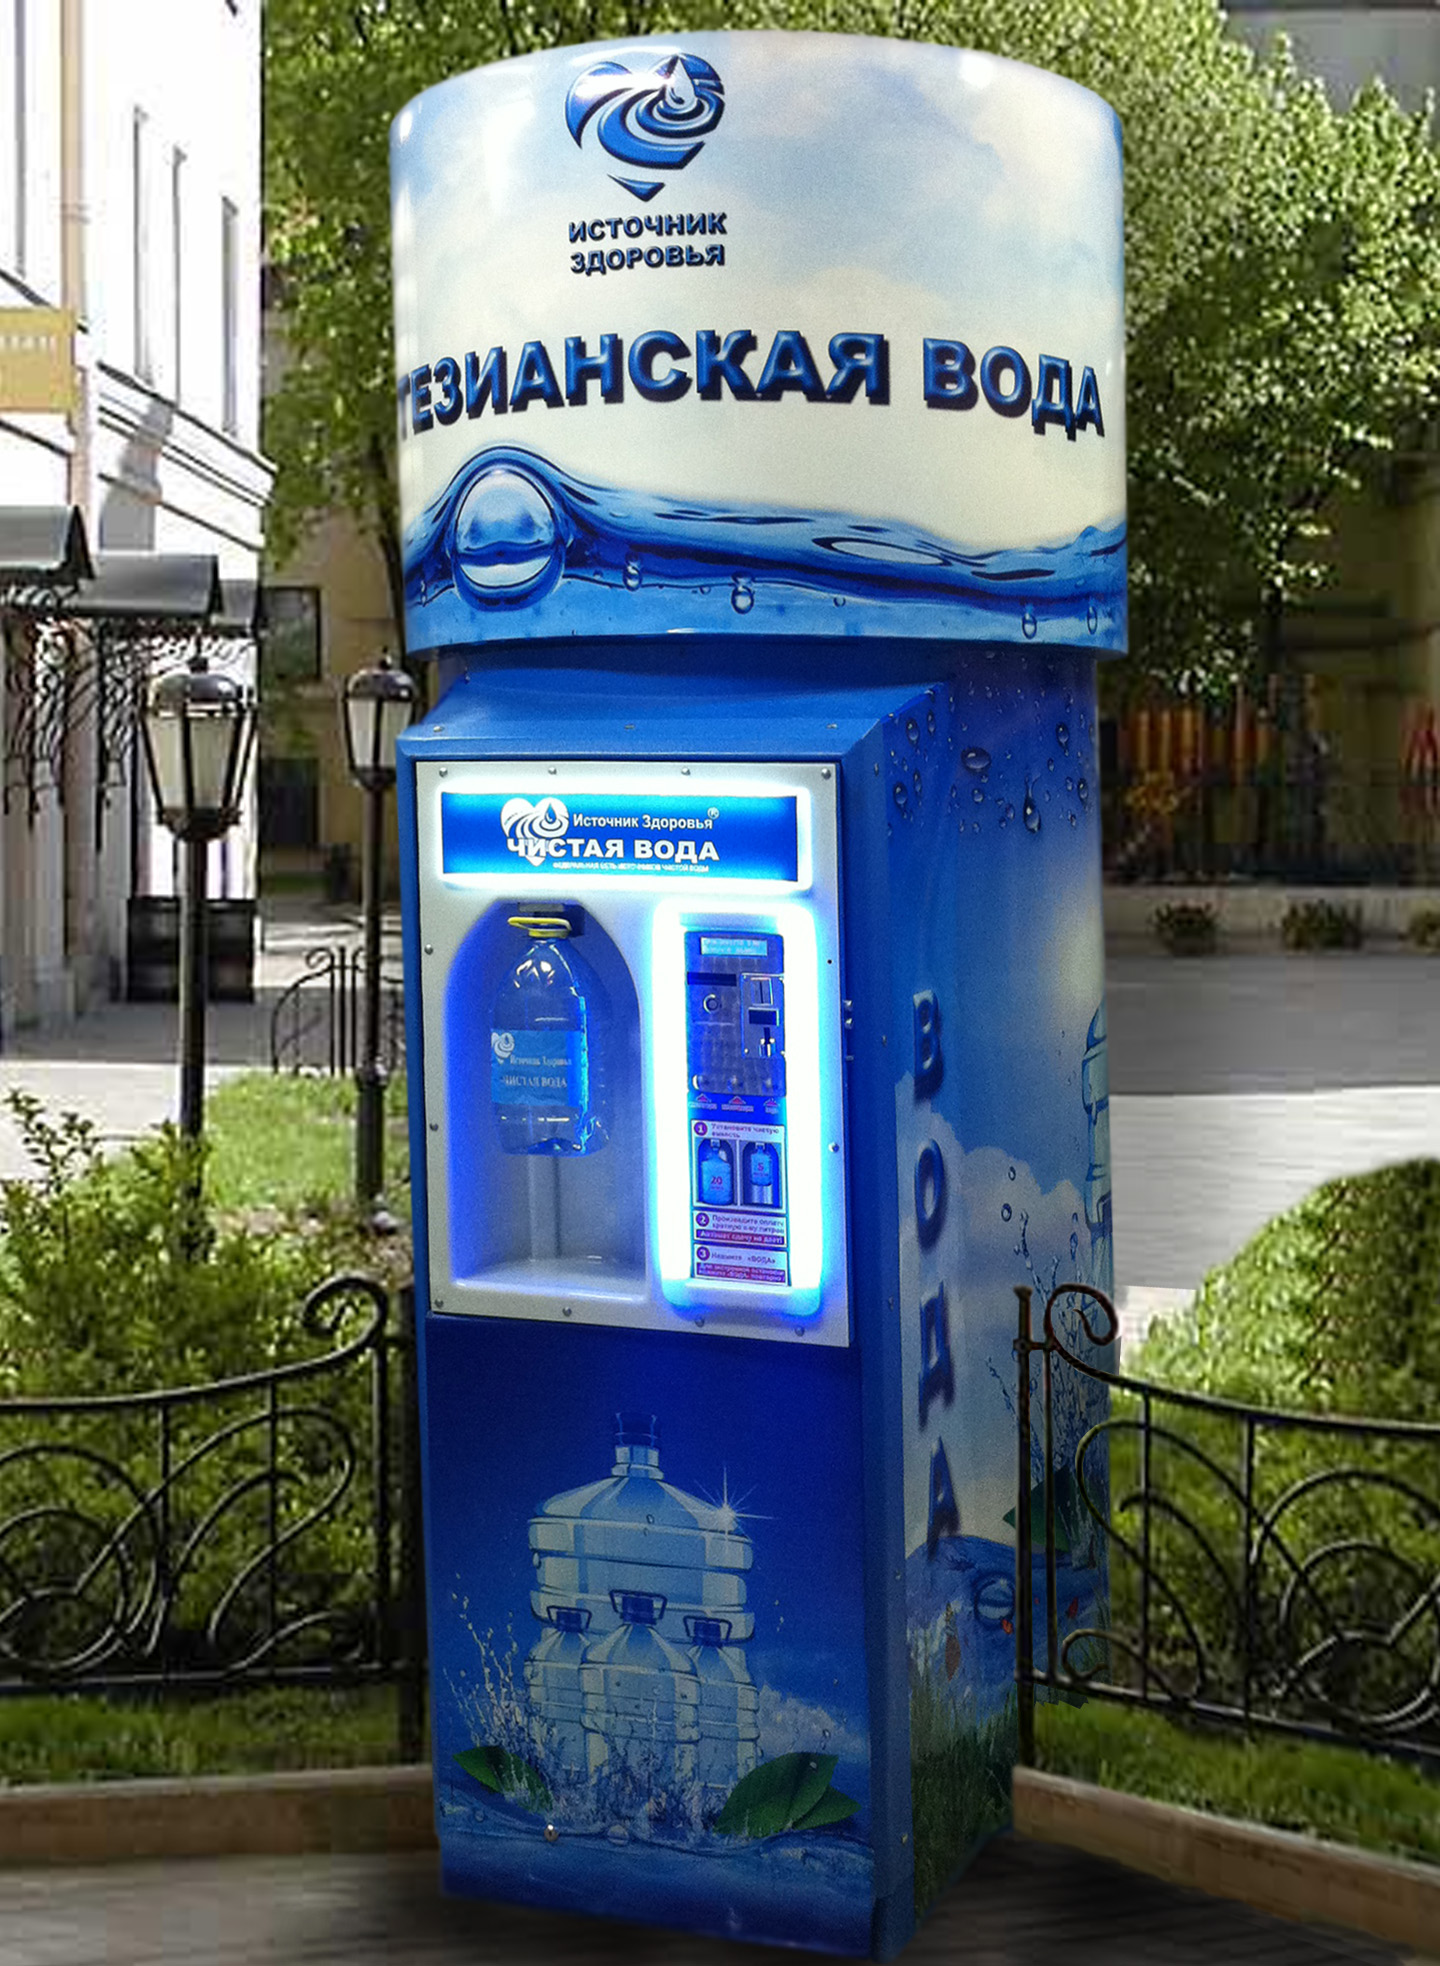 Очищенная вода автомат. Автомат с водой. Аппарат для воды. Автомат для розлива воды. Аппарат для розлива воды на улице.